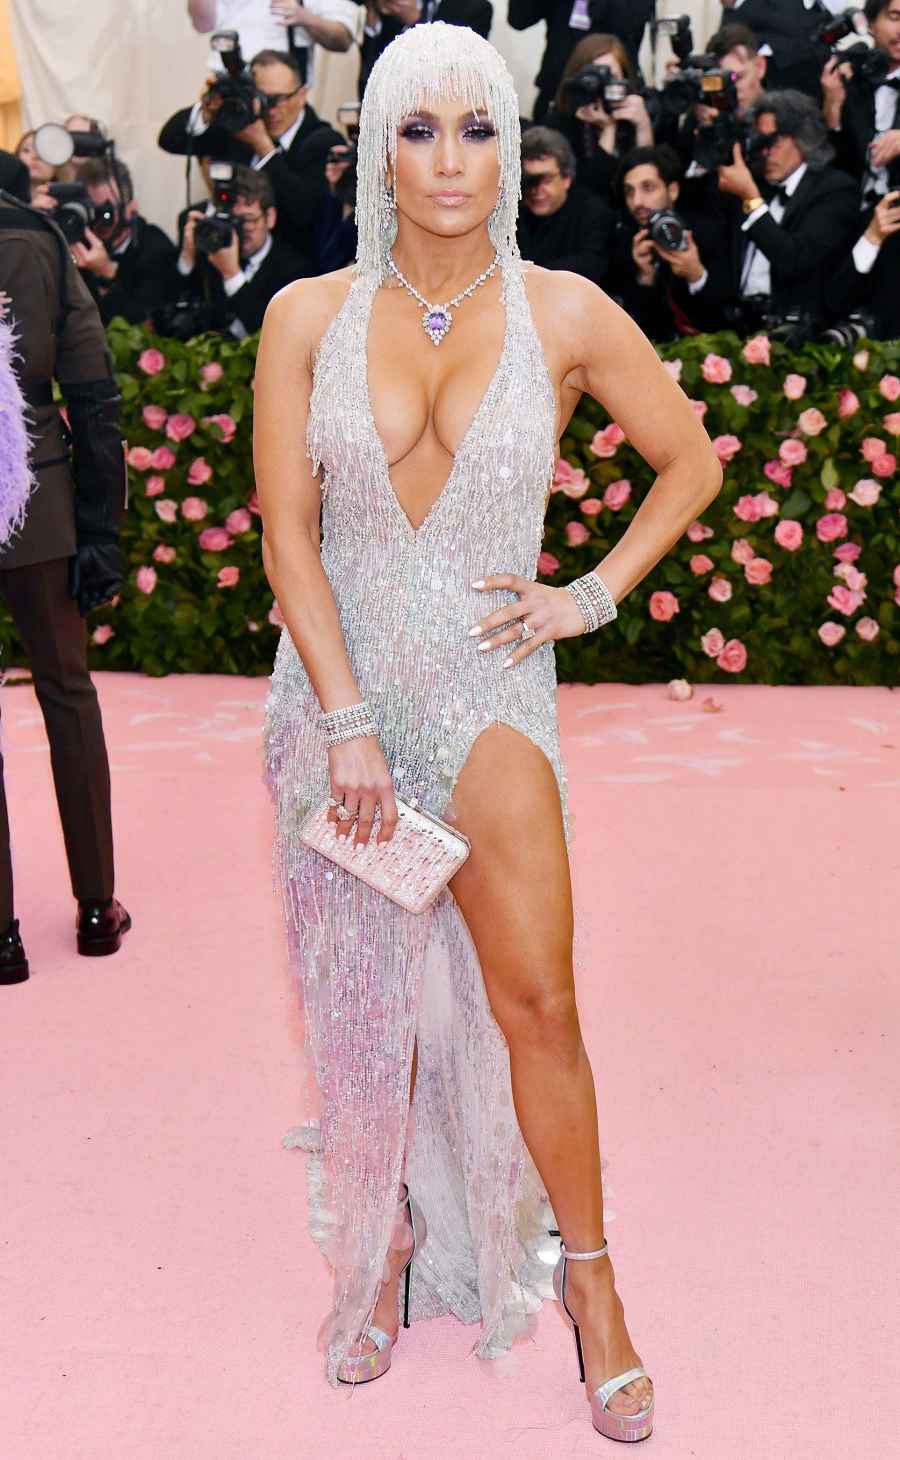 Celebs Wearing Halters - Jennifer Lopez May 6, 2019